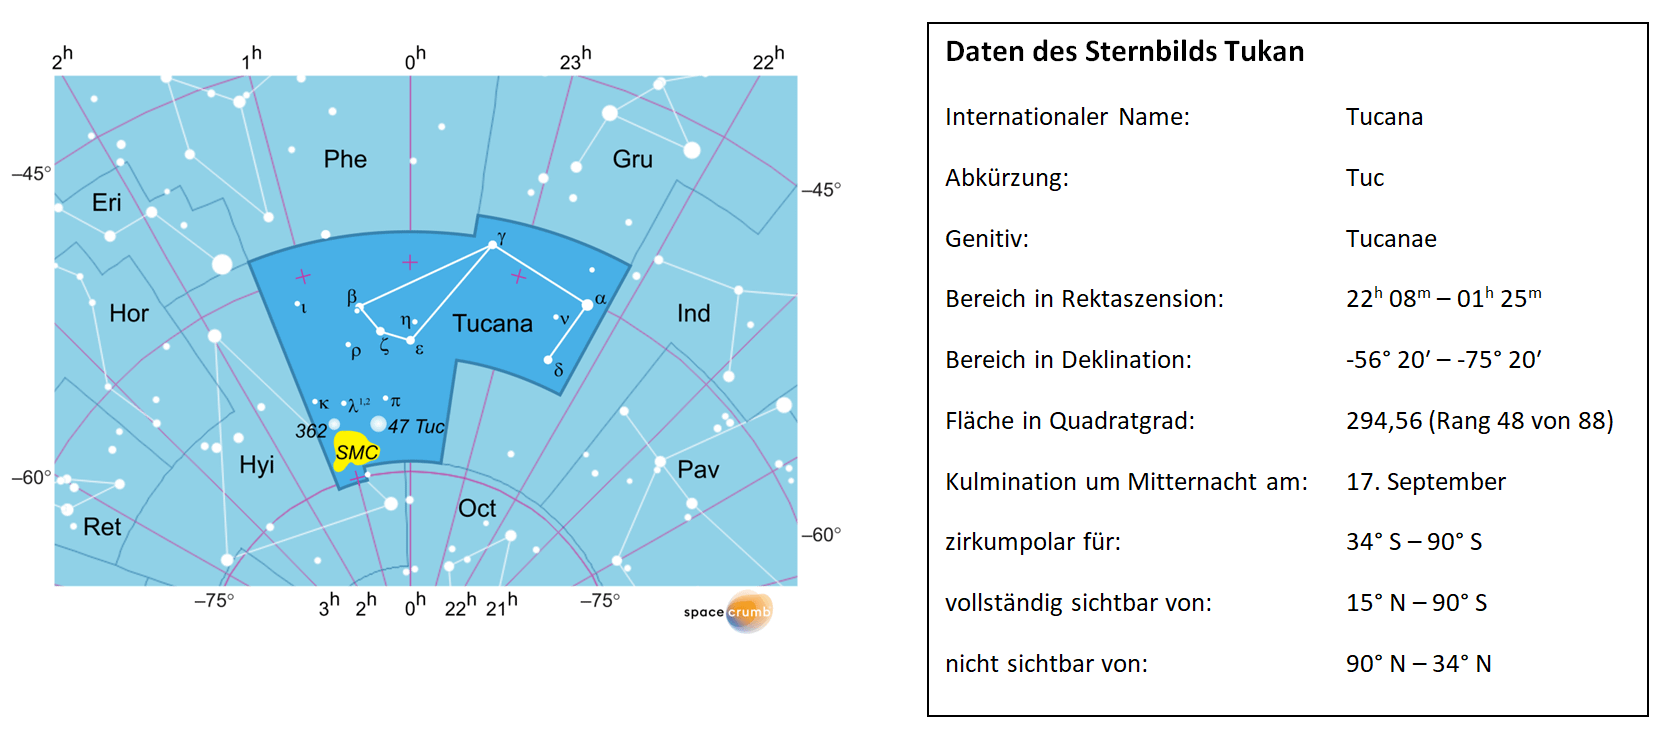 Links zeigt eine mit Koordinaten versehene Karte eines Himmelsausschnitts weiße Sterne auf hellblauem Hintergrund. Die Fläche, die das Sternbild Tukan einnimmt, ist dunkelblau hervorgehoben. Eine Tabelle rechts gibt wichtige Daten des Sternbilds Tukan an.